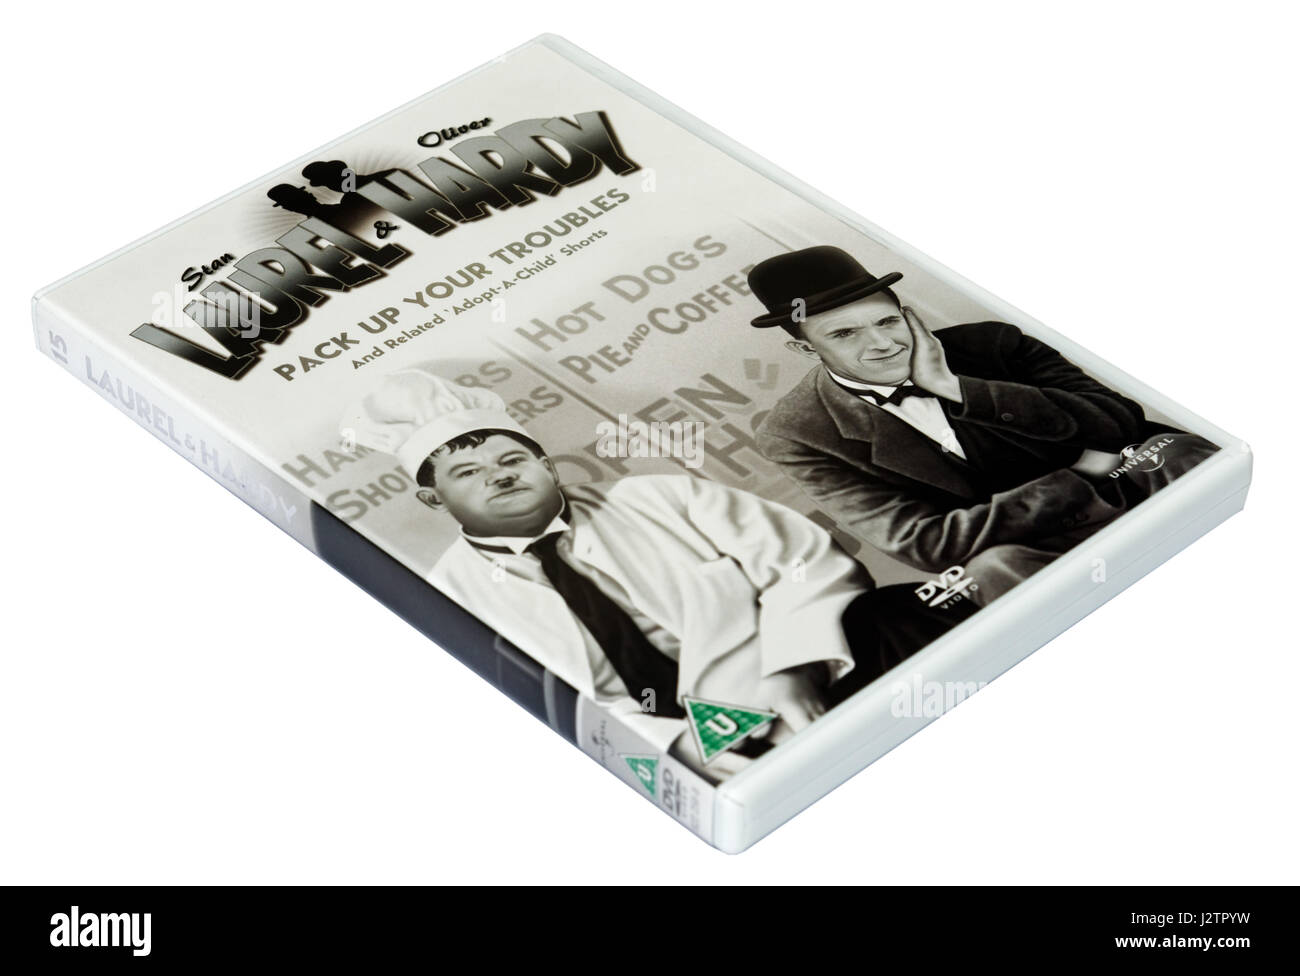 Empacar sus apuros: Laurel y Hardy DVD de películas cortas Foto de stock